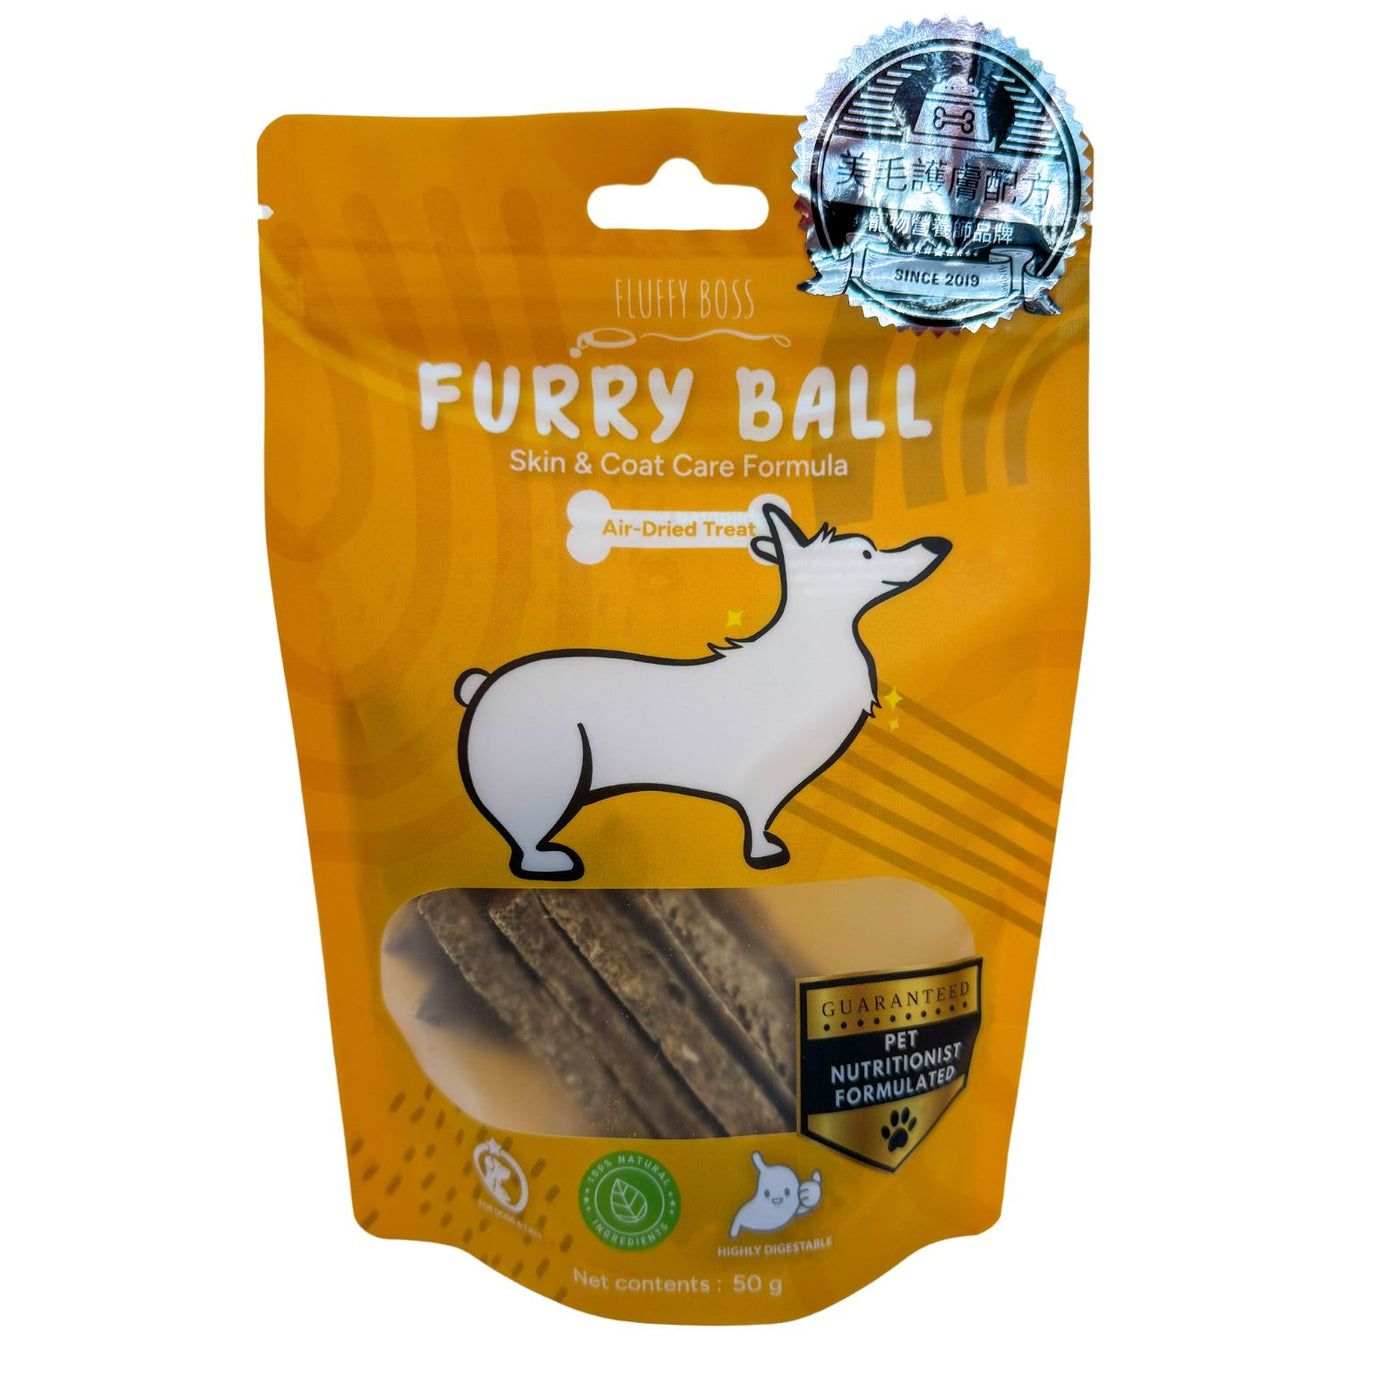 Fluffy Boss FURRY BALL Air-Dried Dog Treats (Chicken)